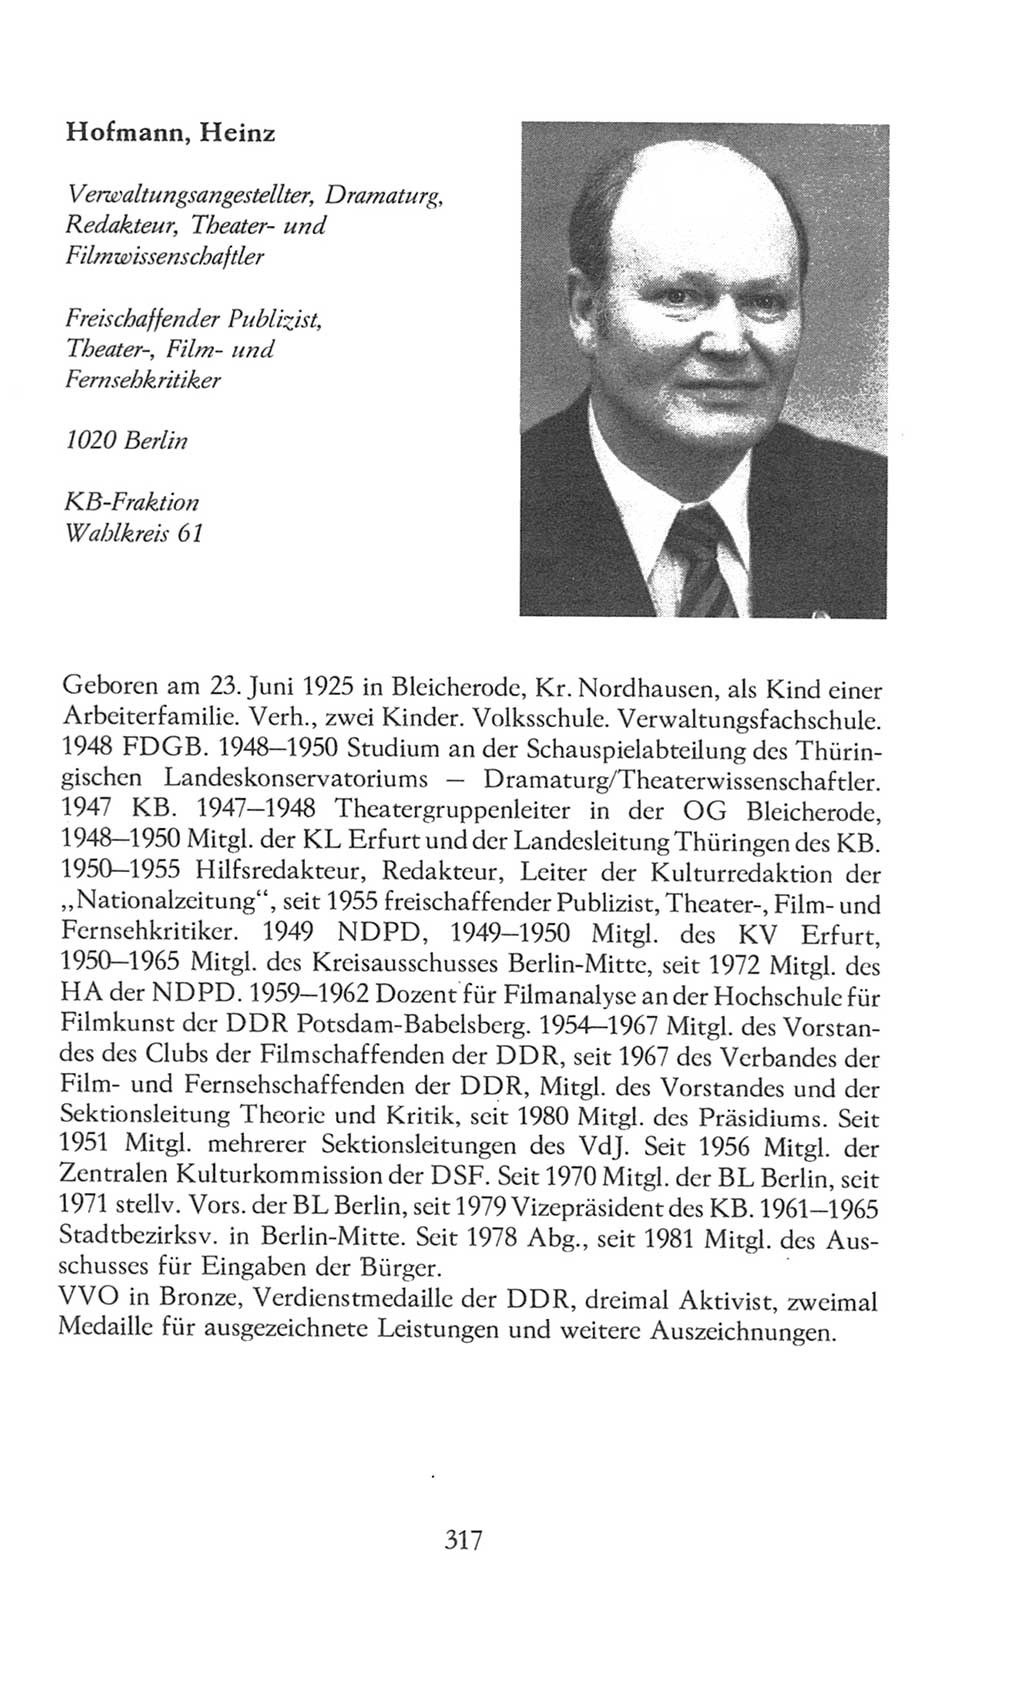 Volkskammer (VK) der Deutschen Demokratischen Republik (DDR), 8. Wahlperiode 1981-1986, Seite 317 (VK. DDR 8. WP. 1981-1986, S. 317)